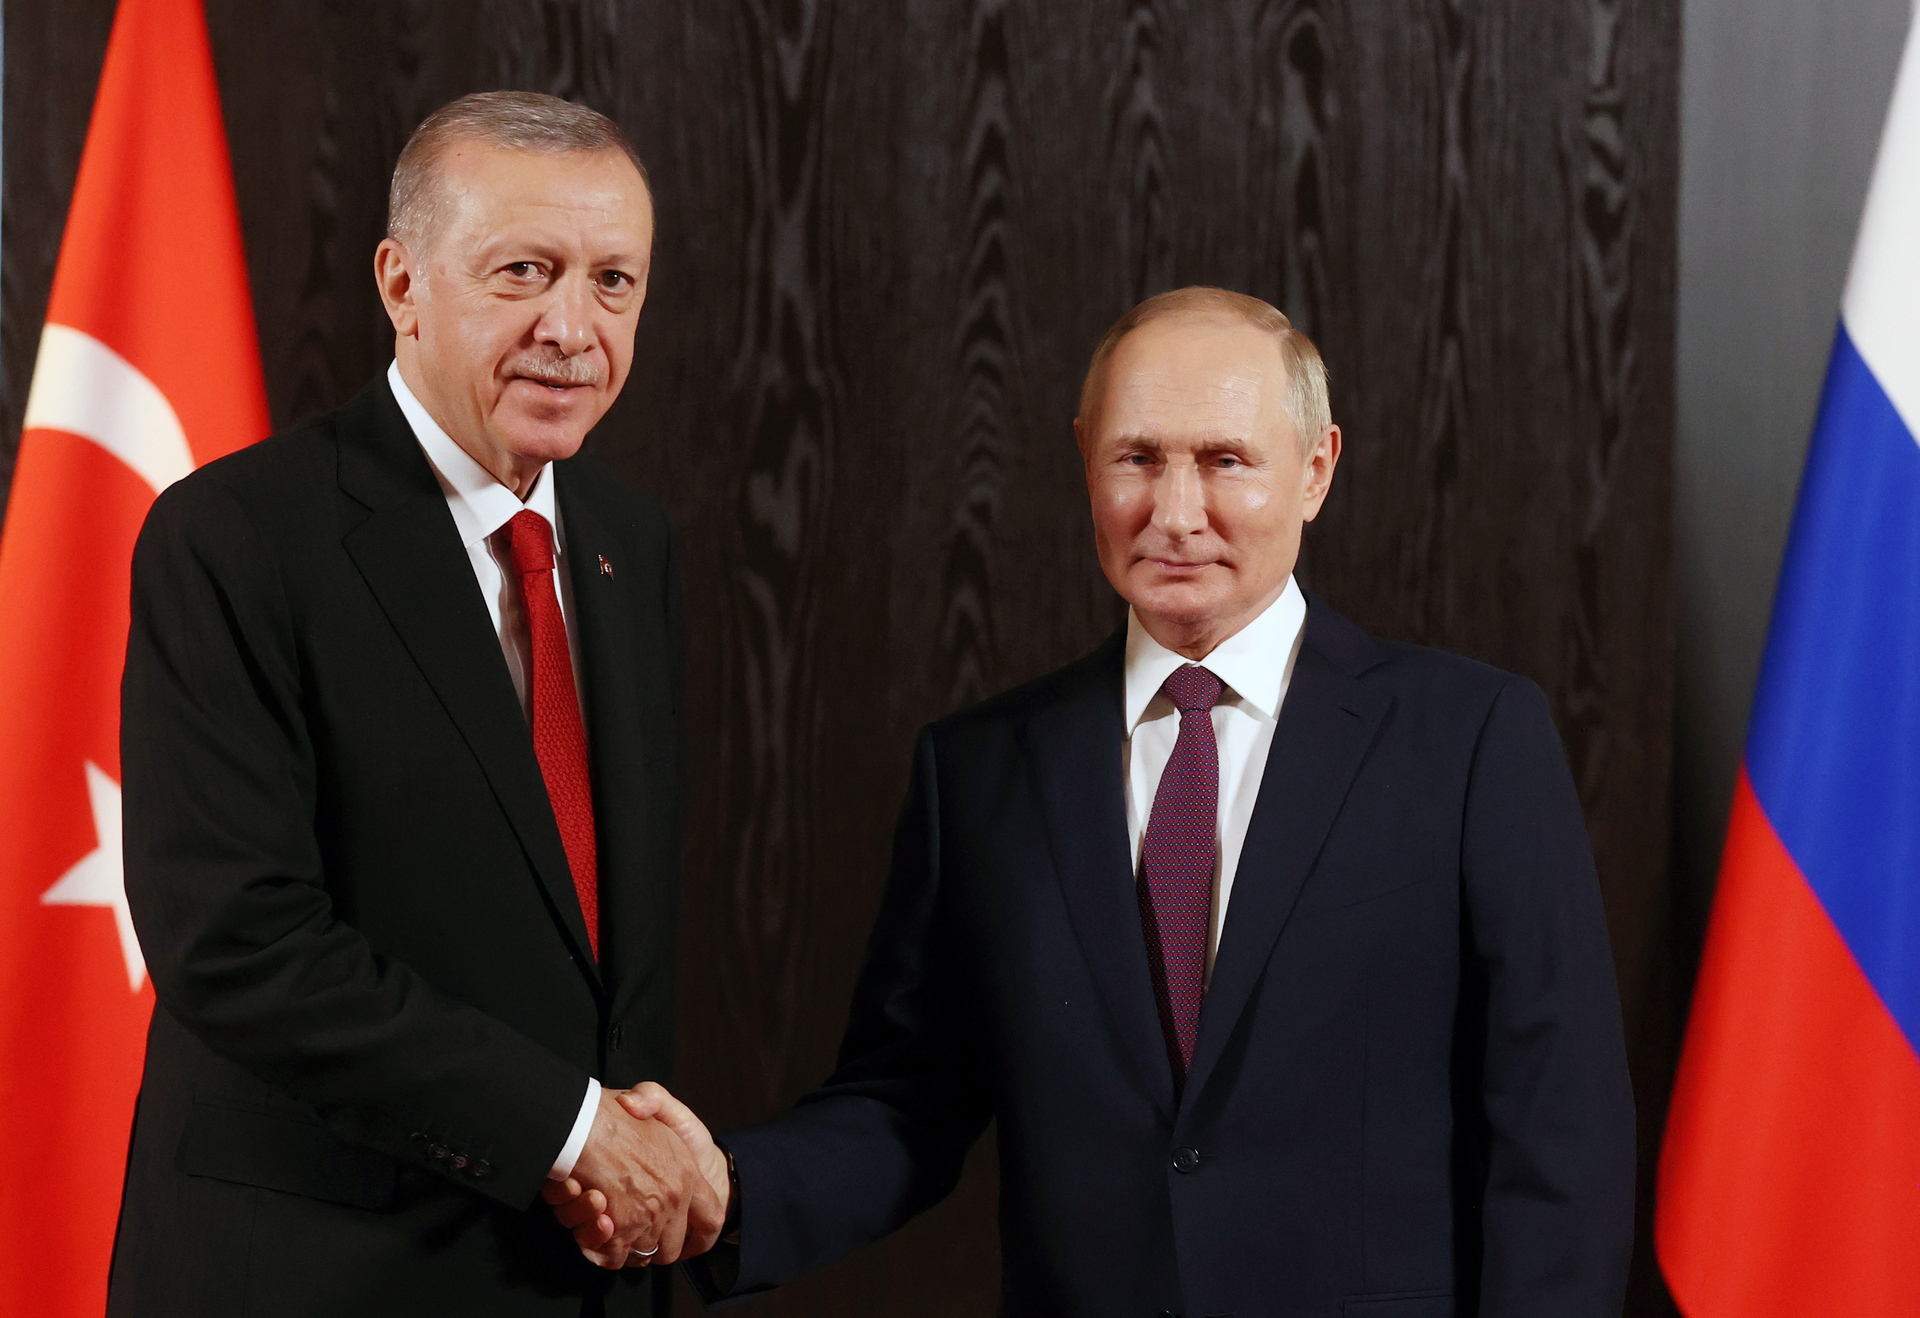 Vladimir Putin defiende ante Turquía la anexión de territorios ucranianos a Rusia